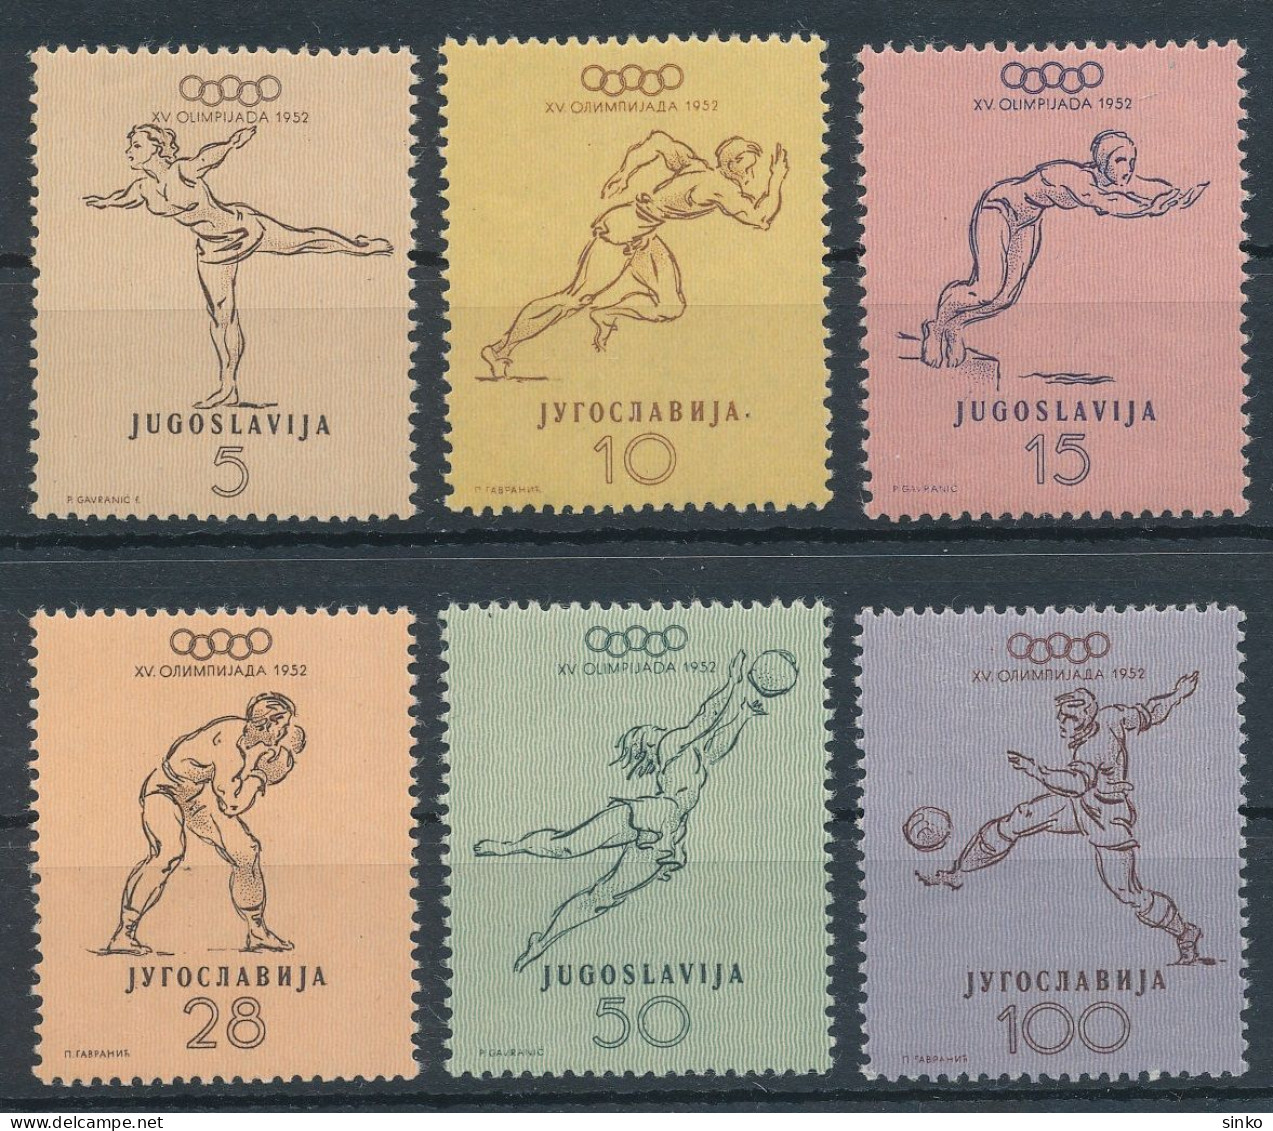 1952. Yugoslavia - Olympics - Verano 1952: Helsinki